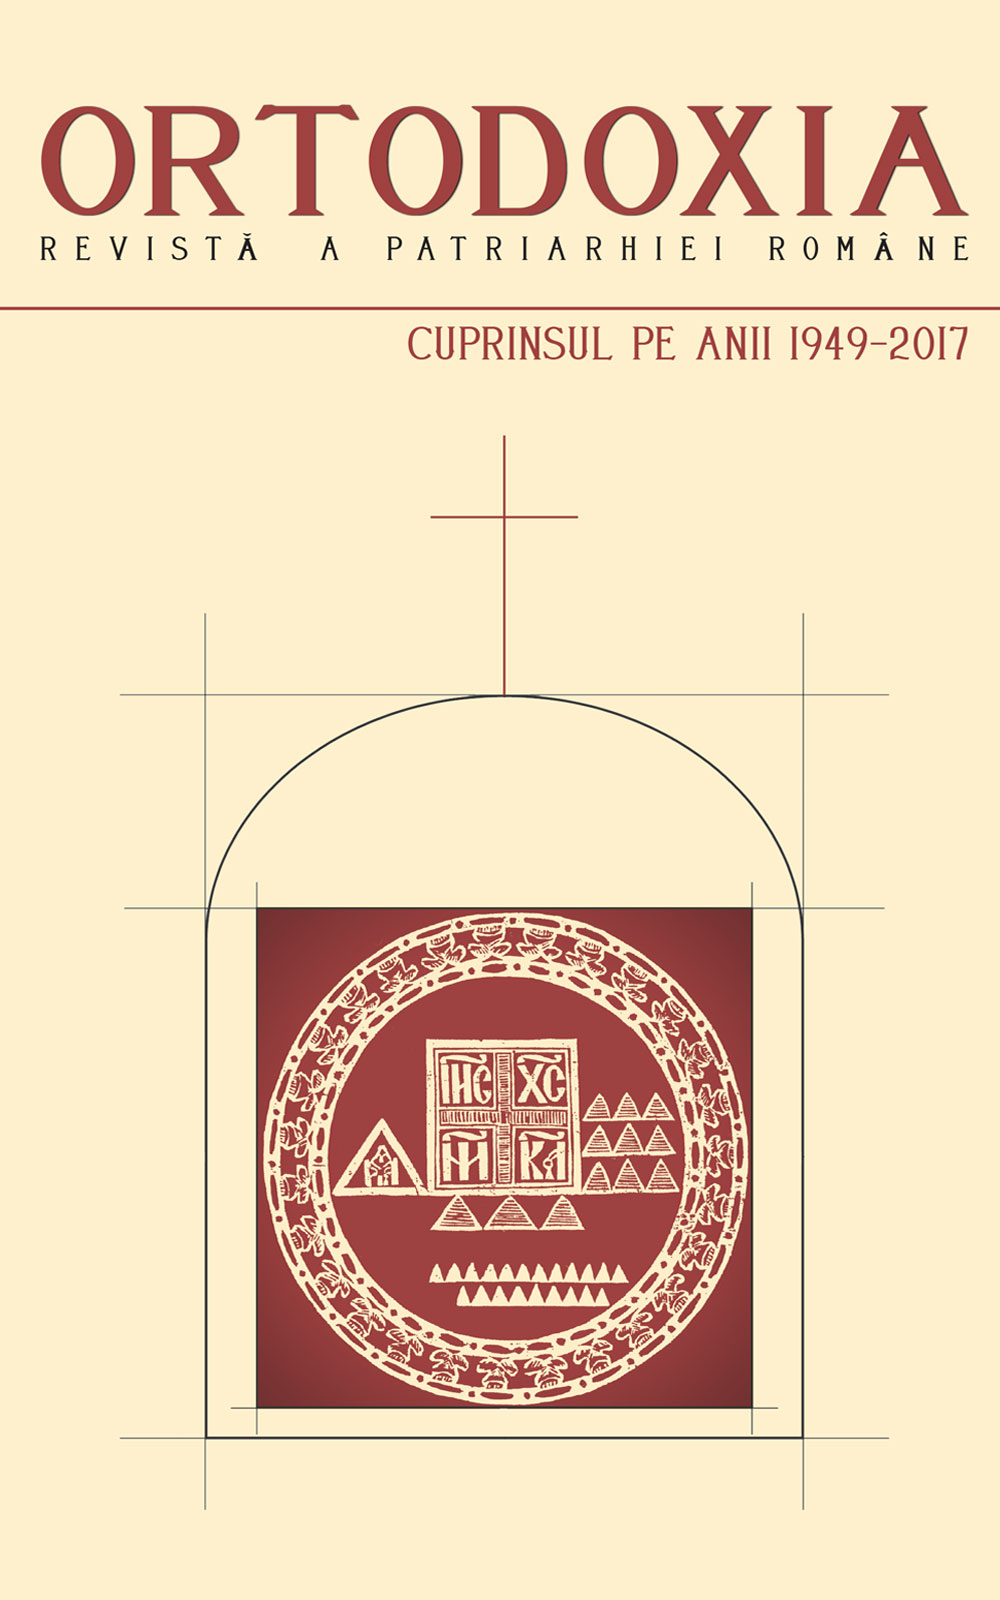 Revista Ortodoxia a Patriarhiei Române - Cuprinsul pe anii 1949-2017